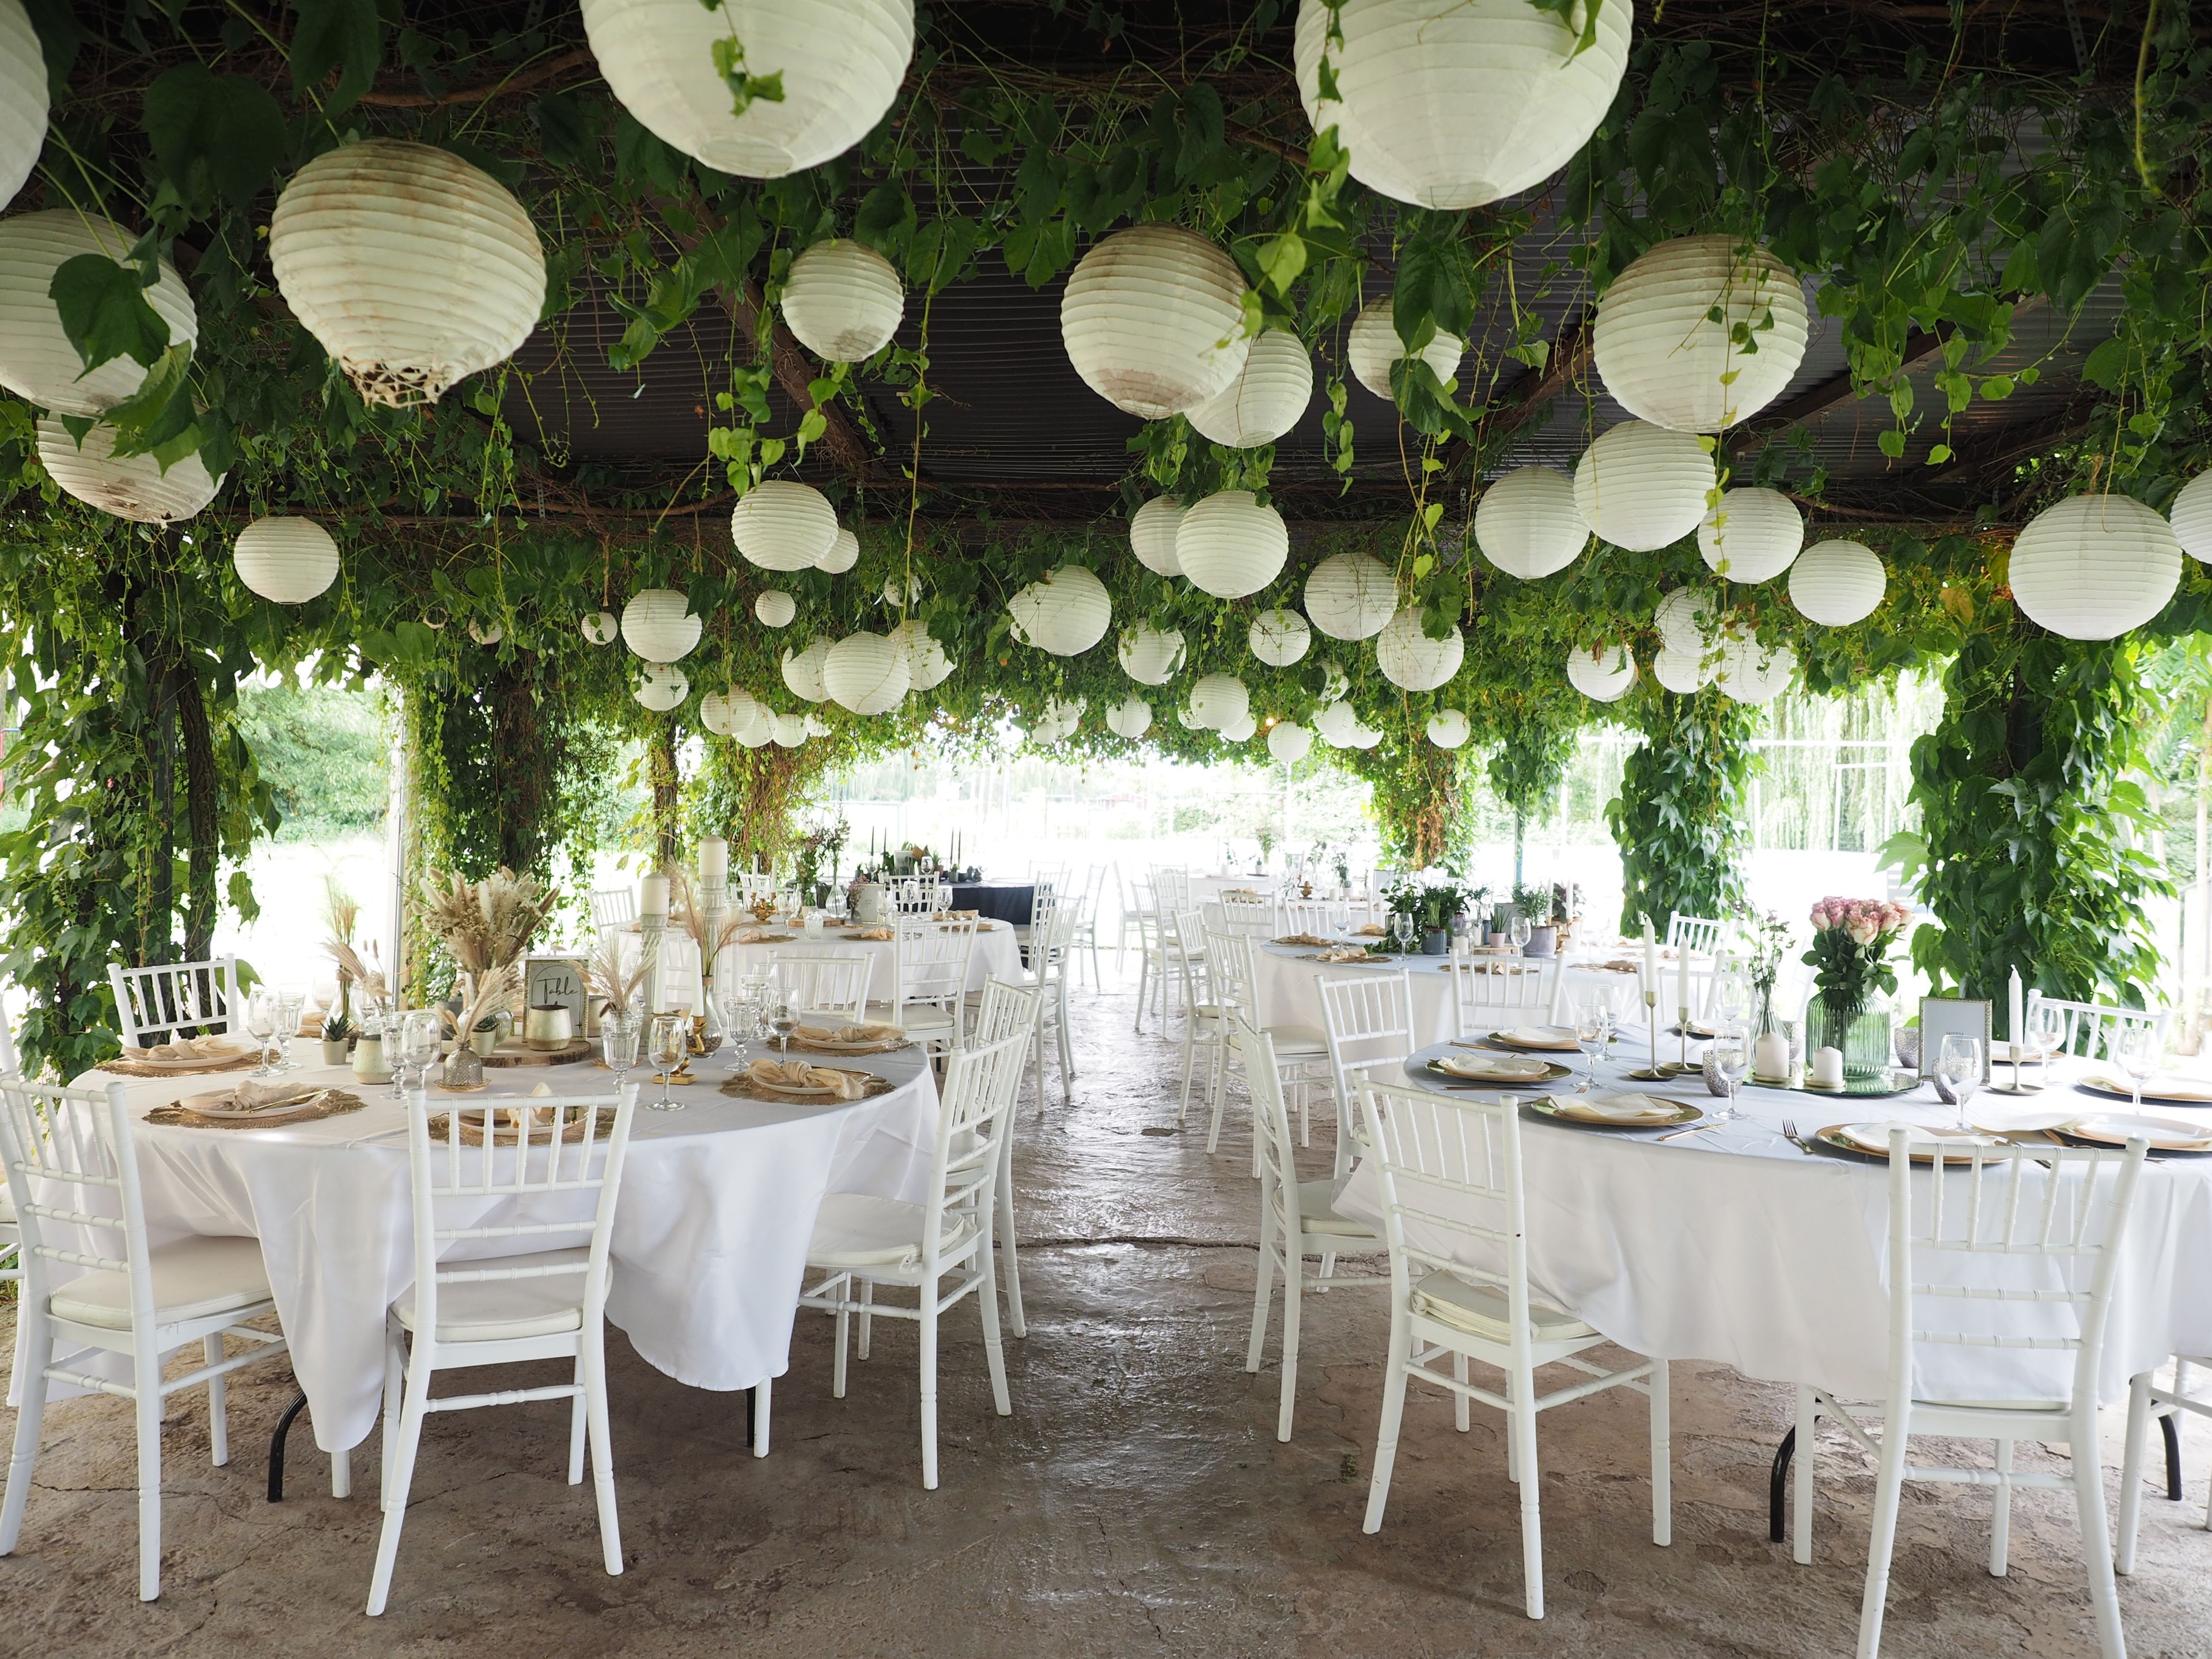 Das Bild zeigt mehrere Tische mit Stühlen, festlich eingedeckt mit Tellern, Besteck und Geschirr sowie Blumen und Kerzen unter einen Pavillion, mit Weinranken an der Decke und weißen Ballons dazwischen.